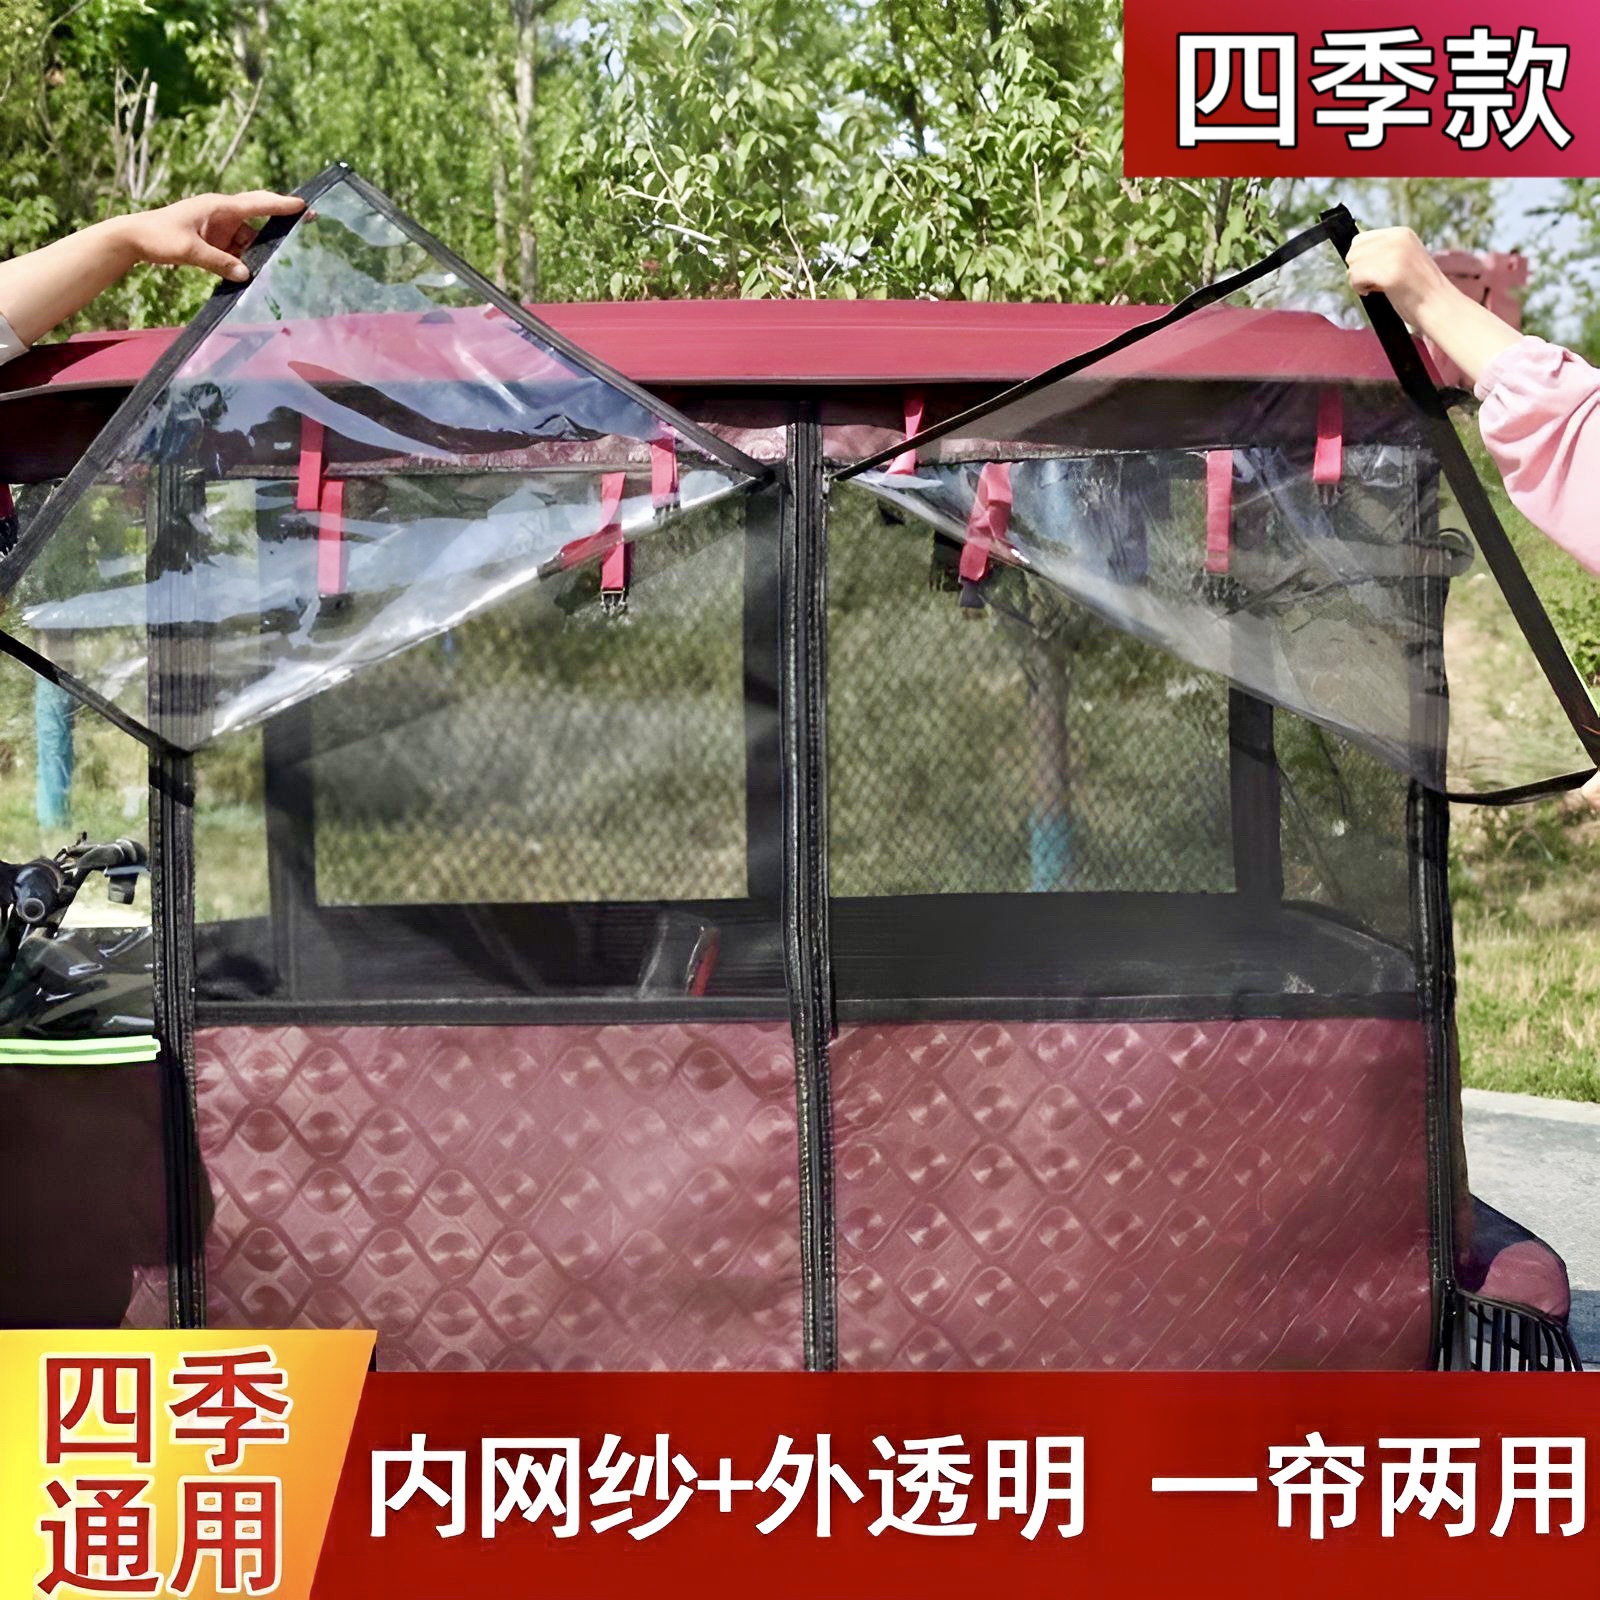 三轮车专用篷布透明围帘防风电动车雨帘棚车小巴士车篷全保暖双层